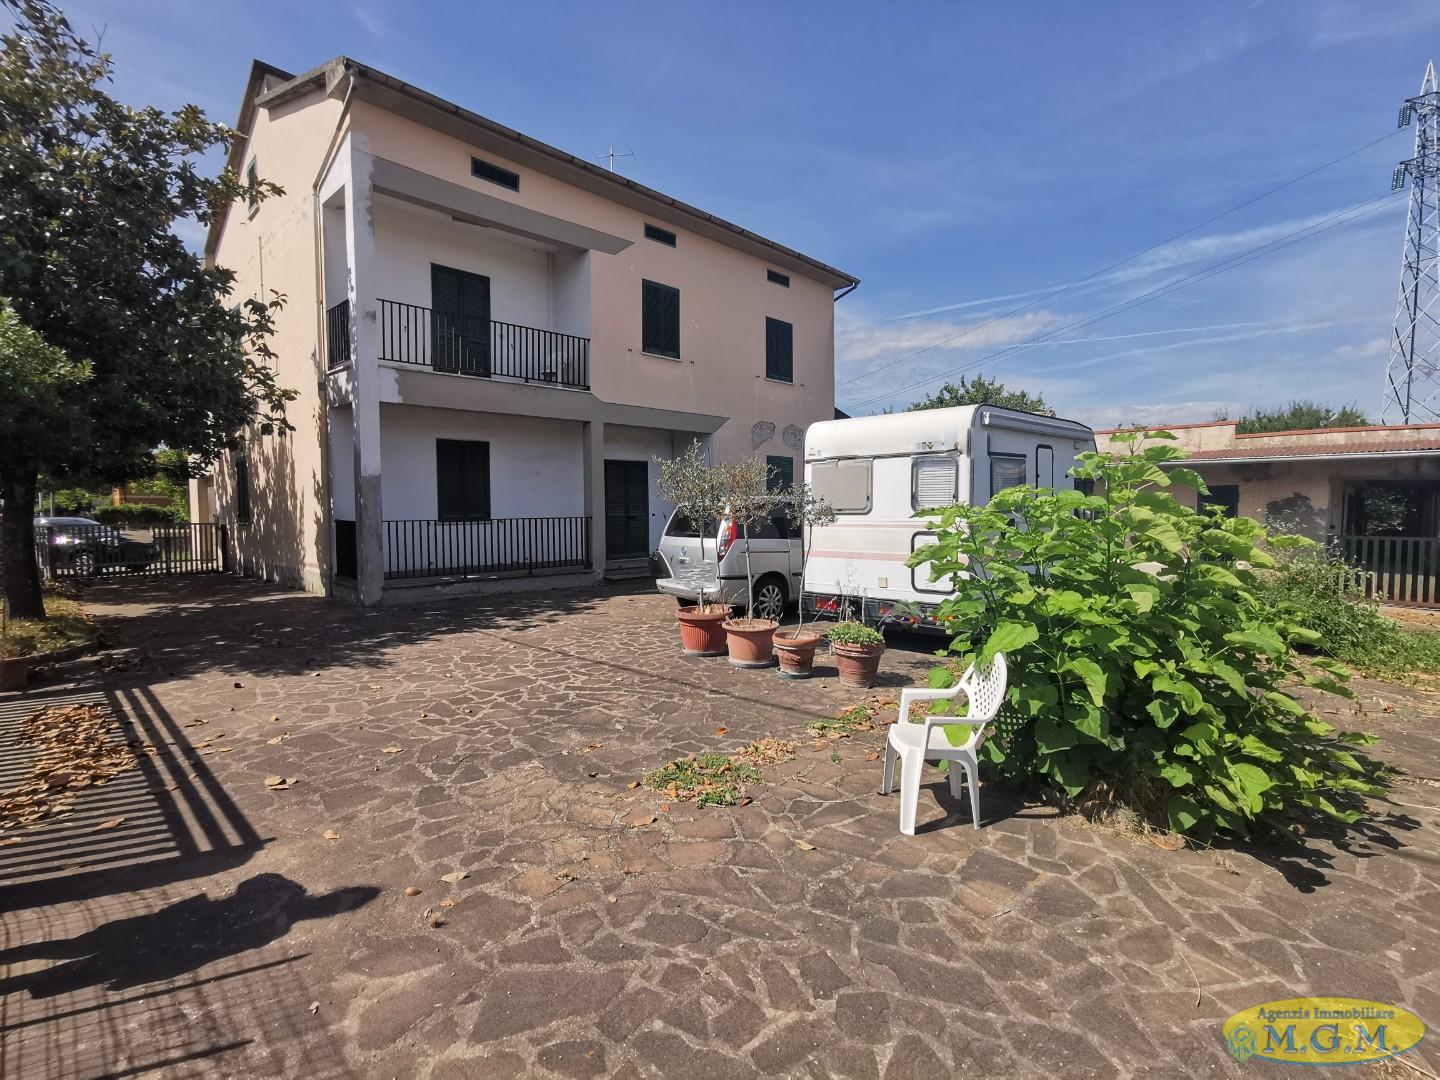 Soluzione Indipendente in vendita a Santa Croce sull'Arno, 10 locali, prezzo € 200.000 | PortaleAgenzieImmobiliari.it